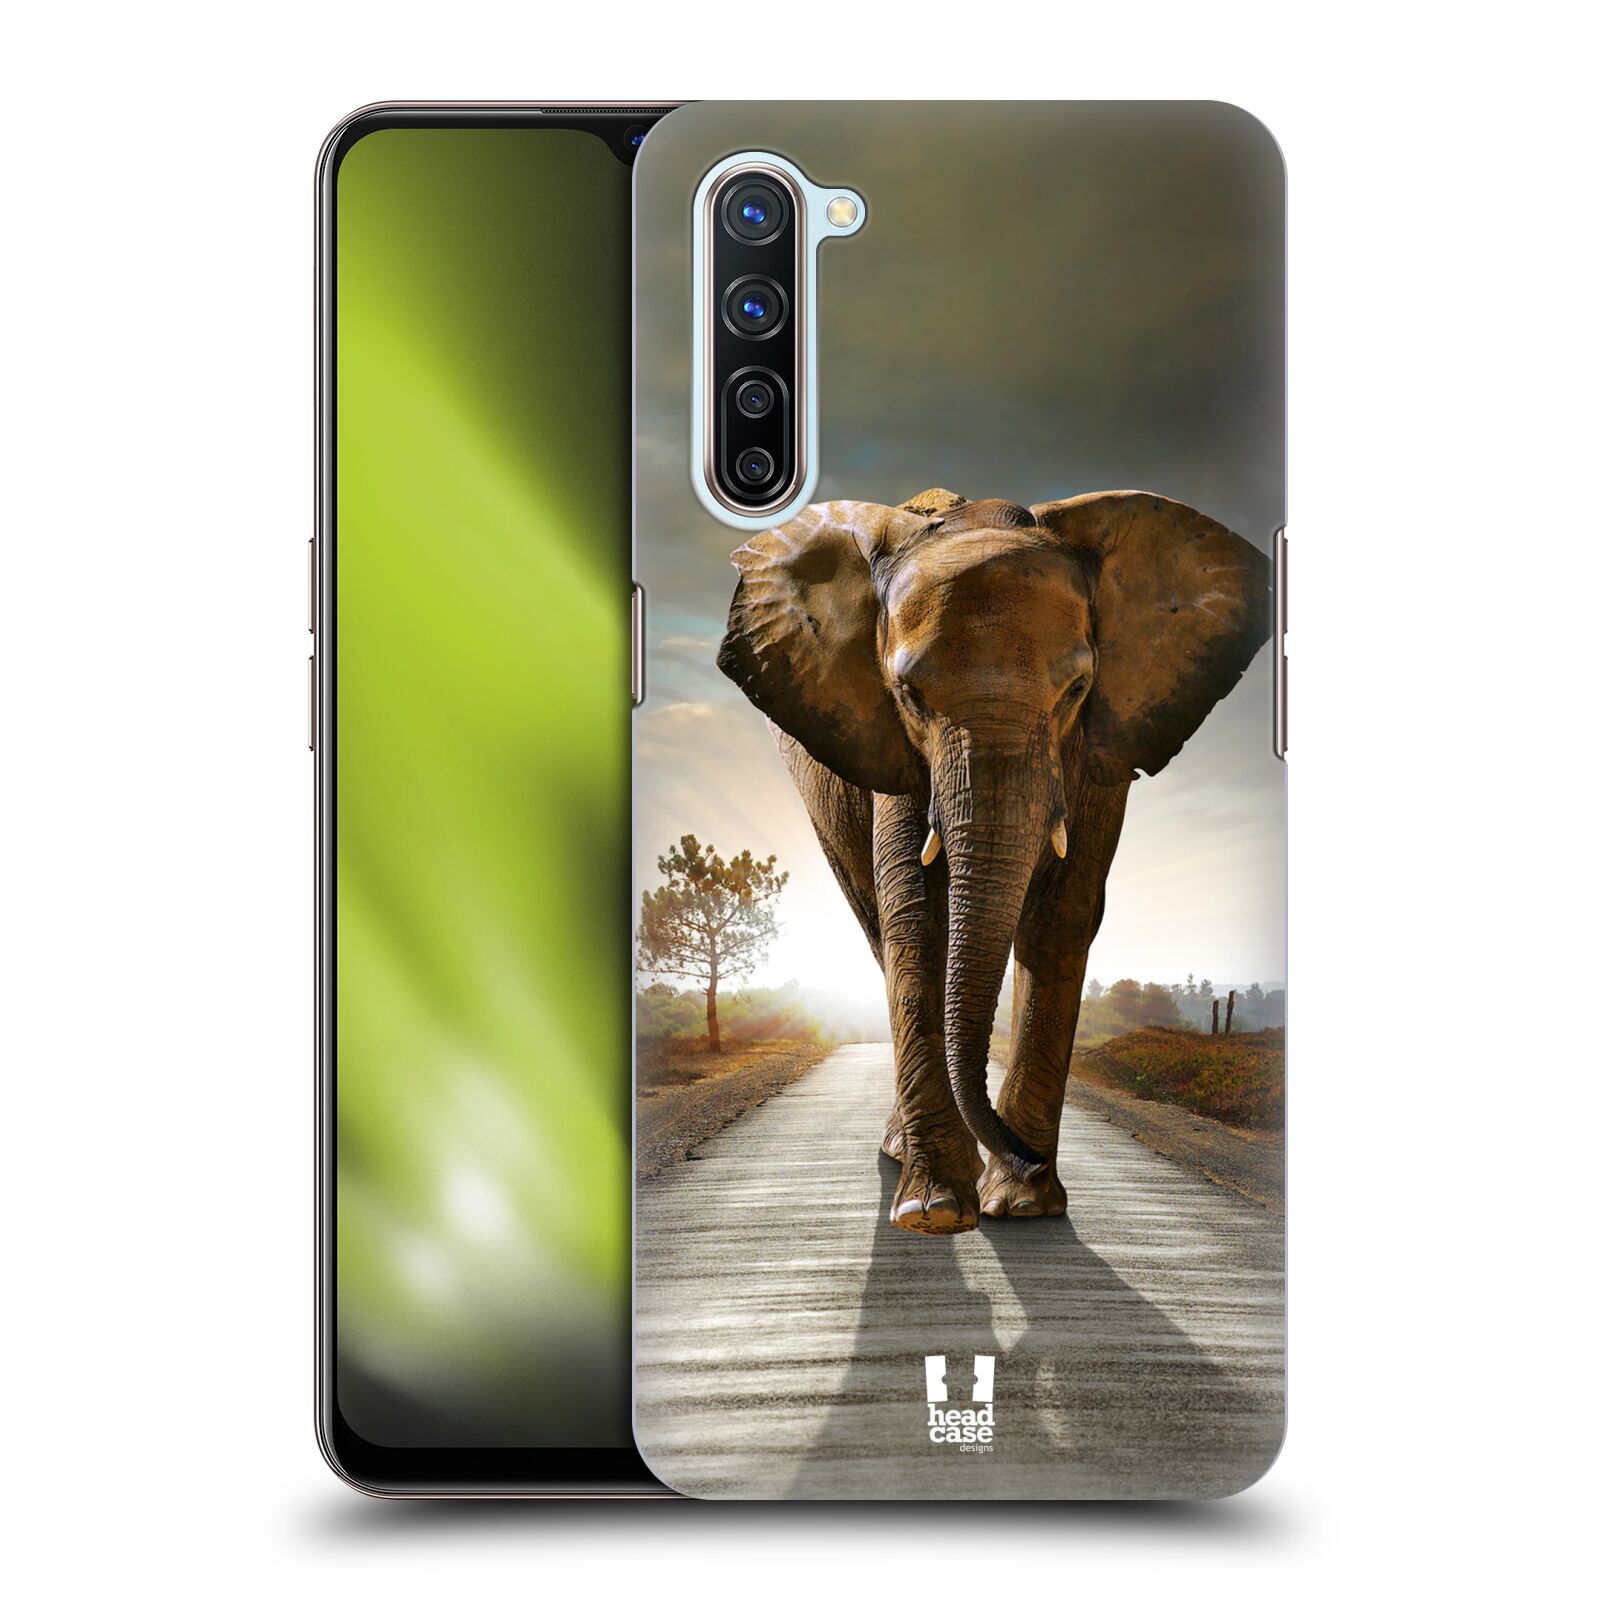 Zadní obal pro mobil Oppo Find X2 LITE - HEAD CASE - Svět zvířat kráčející slon